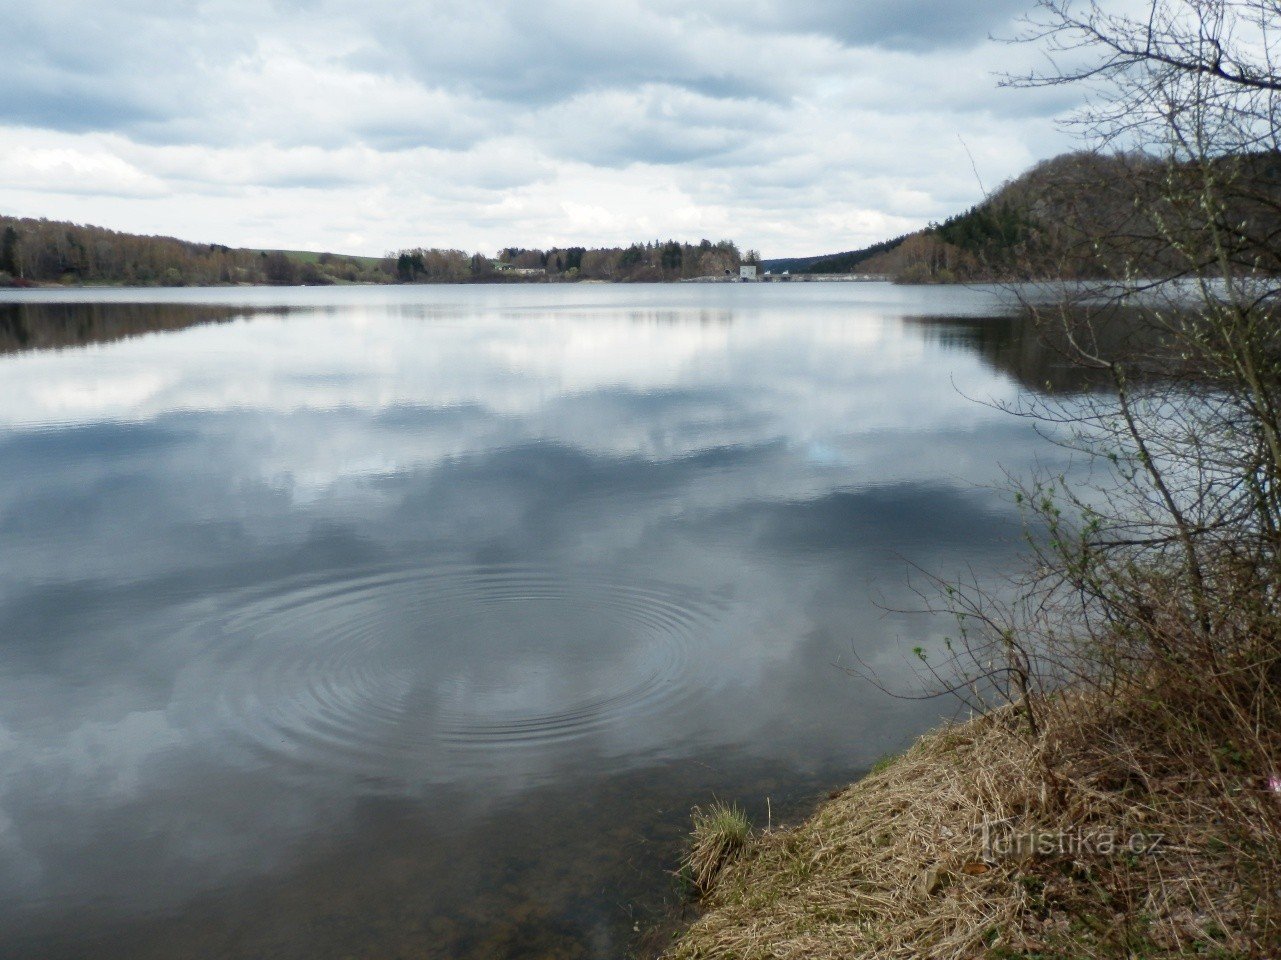 Water reservoir Seč I